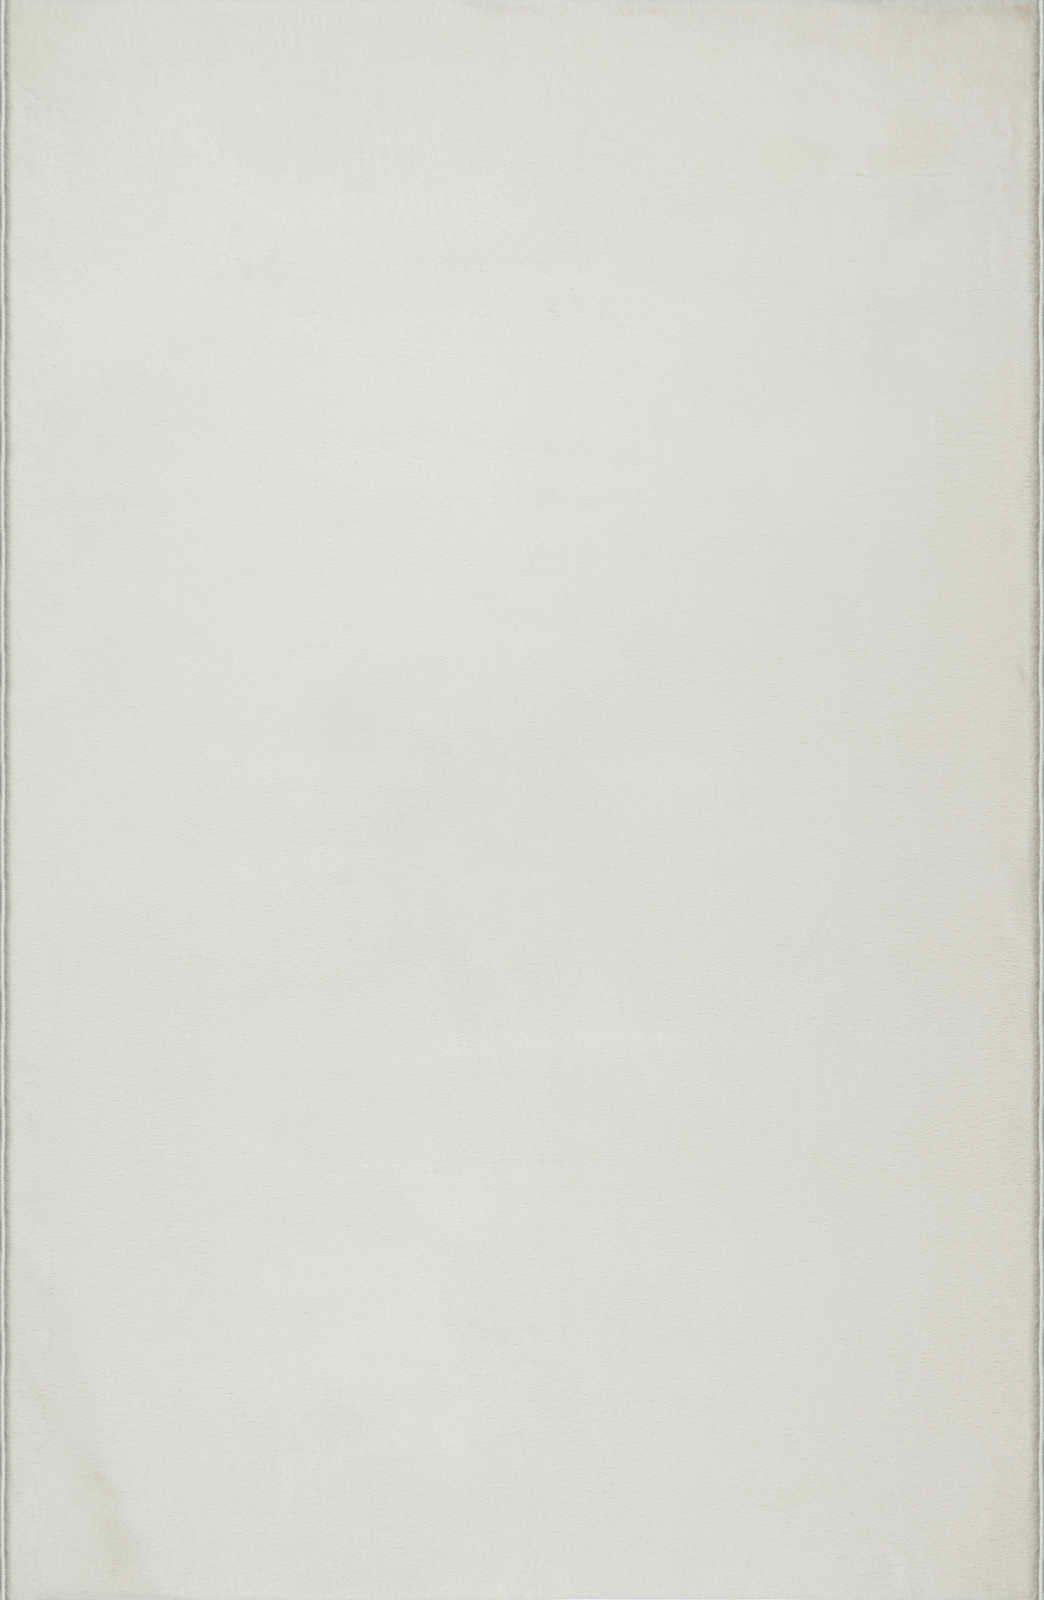             Sanfter Hochflor Teppich in Creme – 100 x 50 cm
        